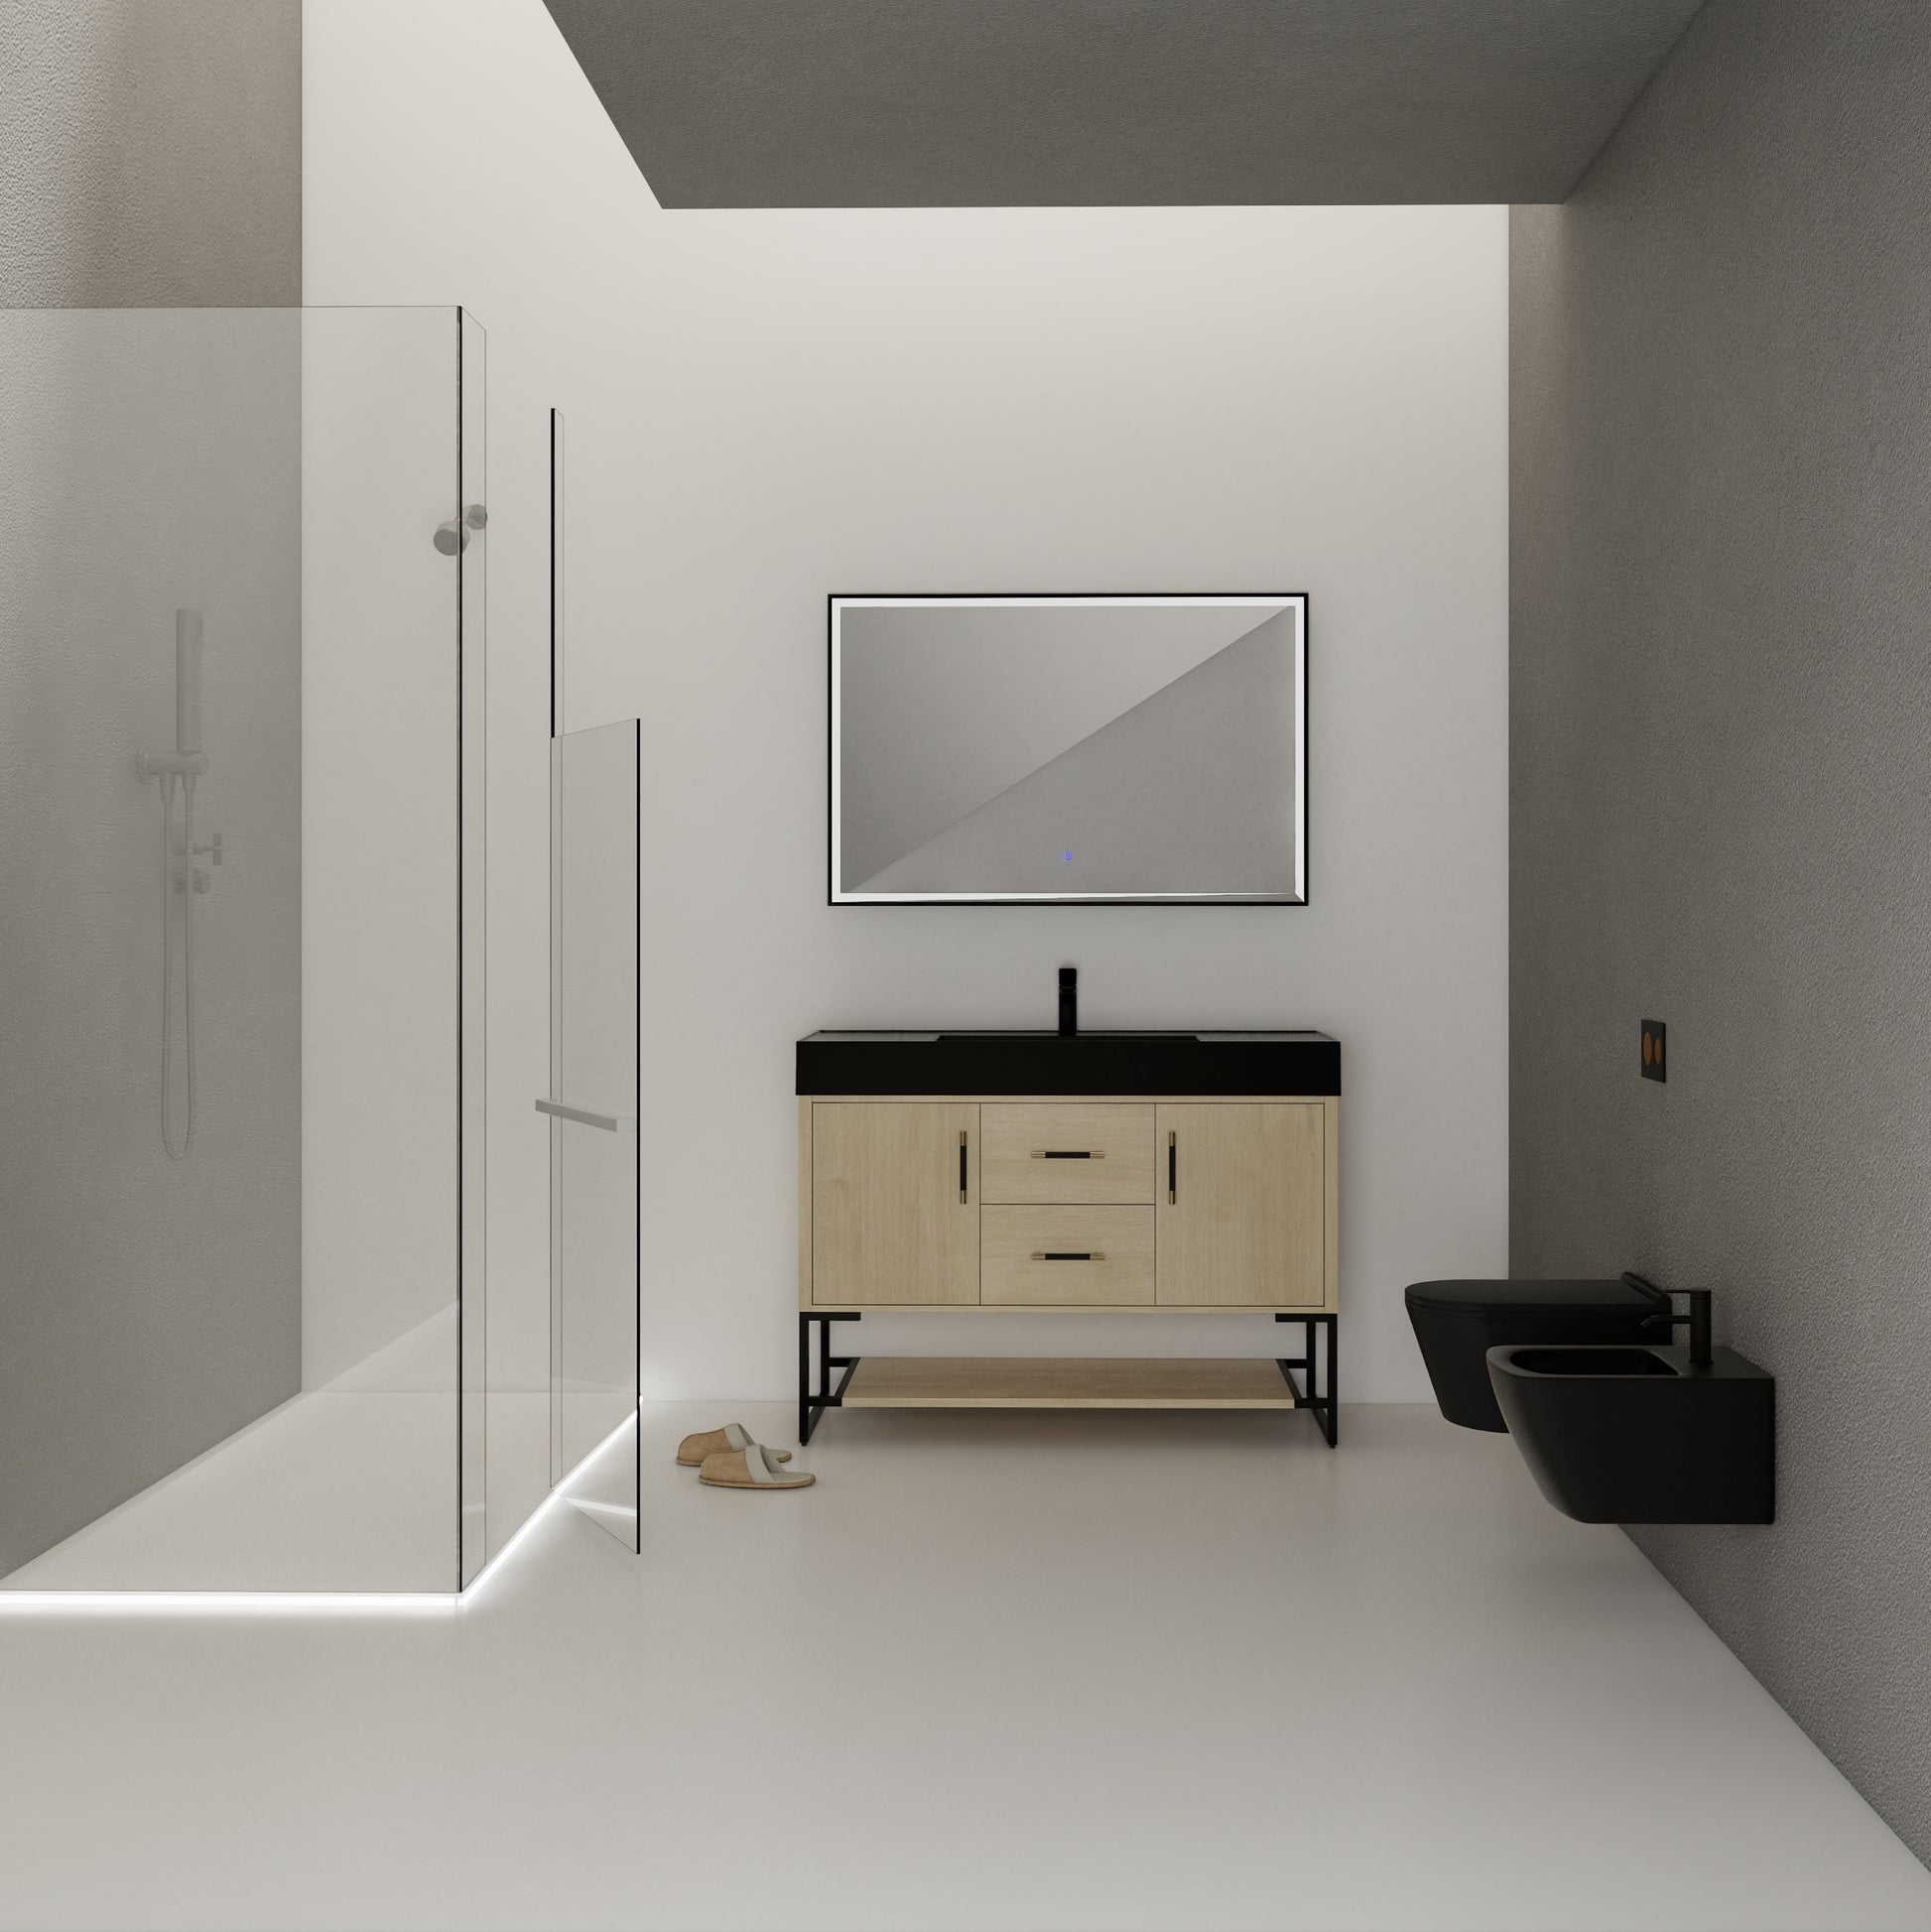 48 Inch Bathroom Vanity Freestanding Design With